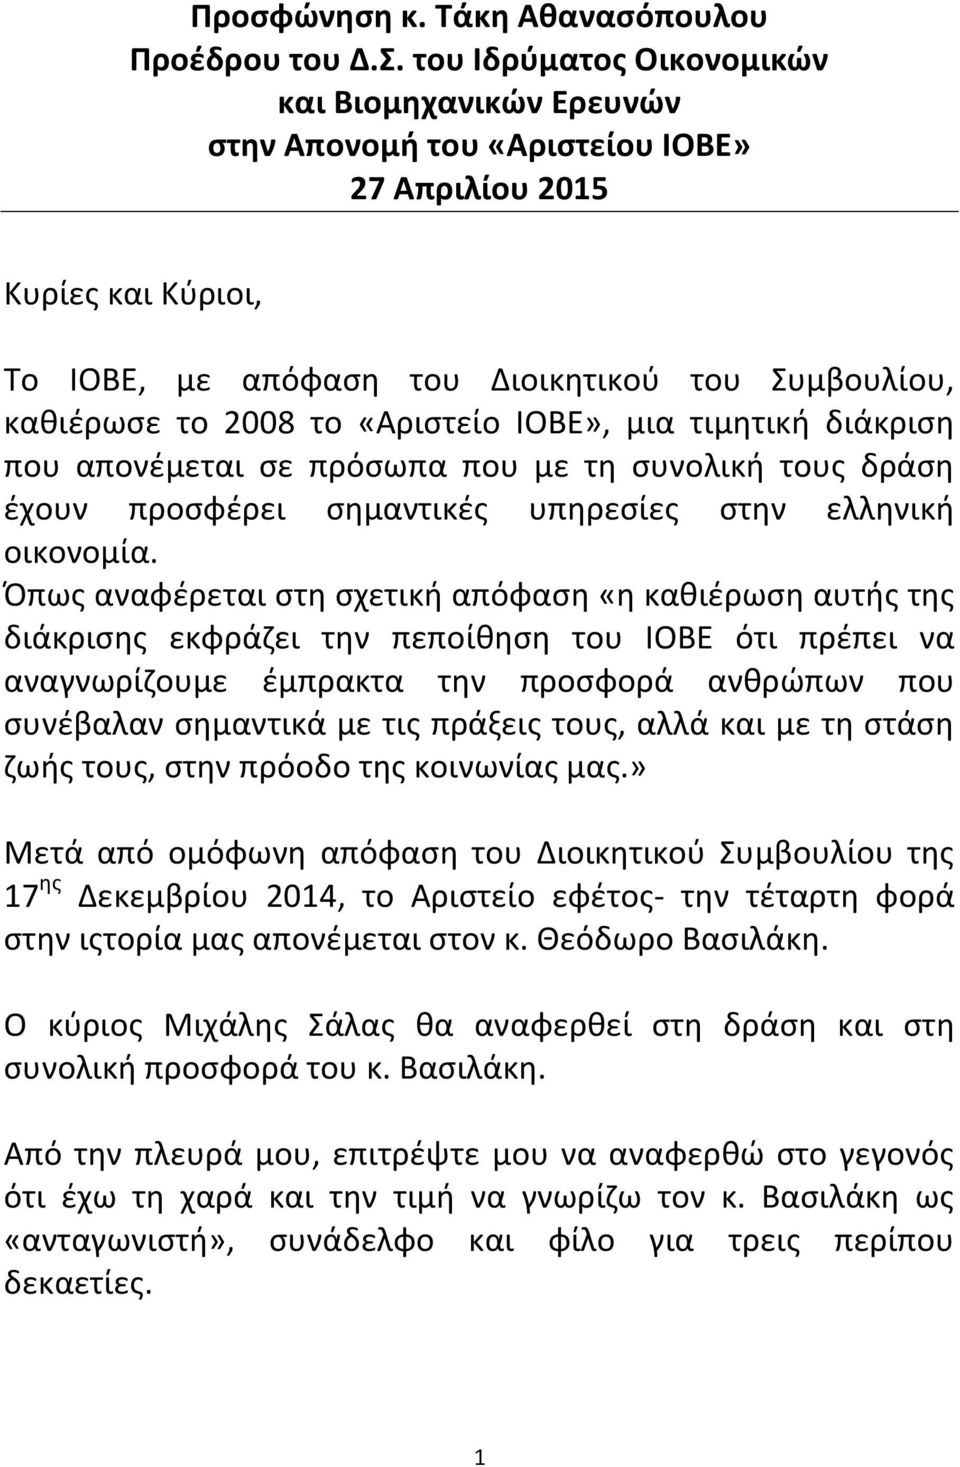 «Αριστείο ΙΟΒΕ», μια τιμητική διάκριση που απονέμεται σε πρόσωπα που με τη συνολική τους δράση έχουν προσφέρει σημαντικές υπηρεσίες στην ελληνική οικονομία.